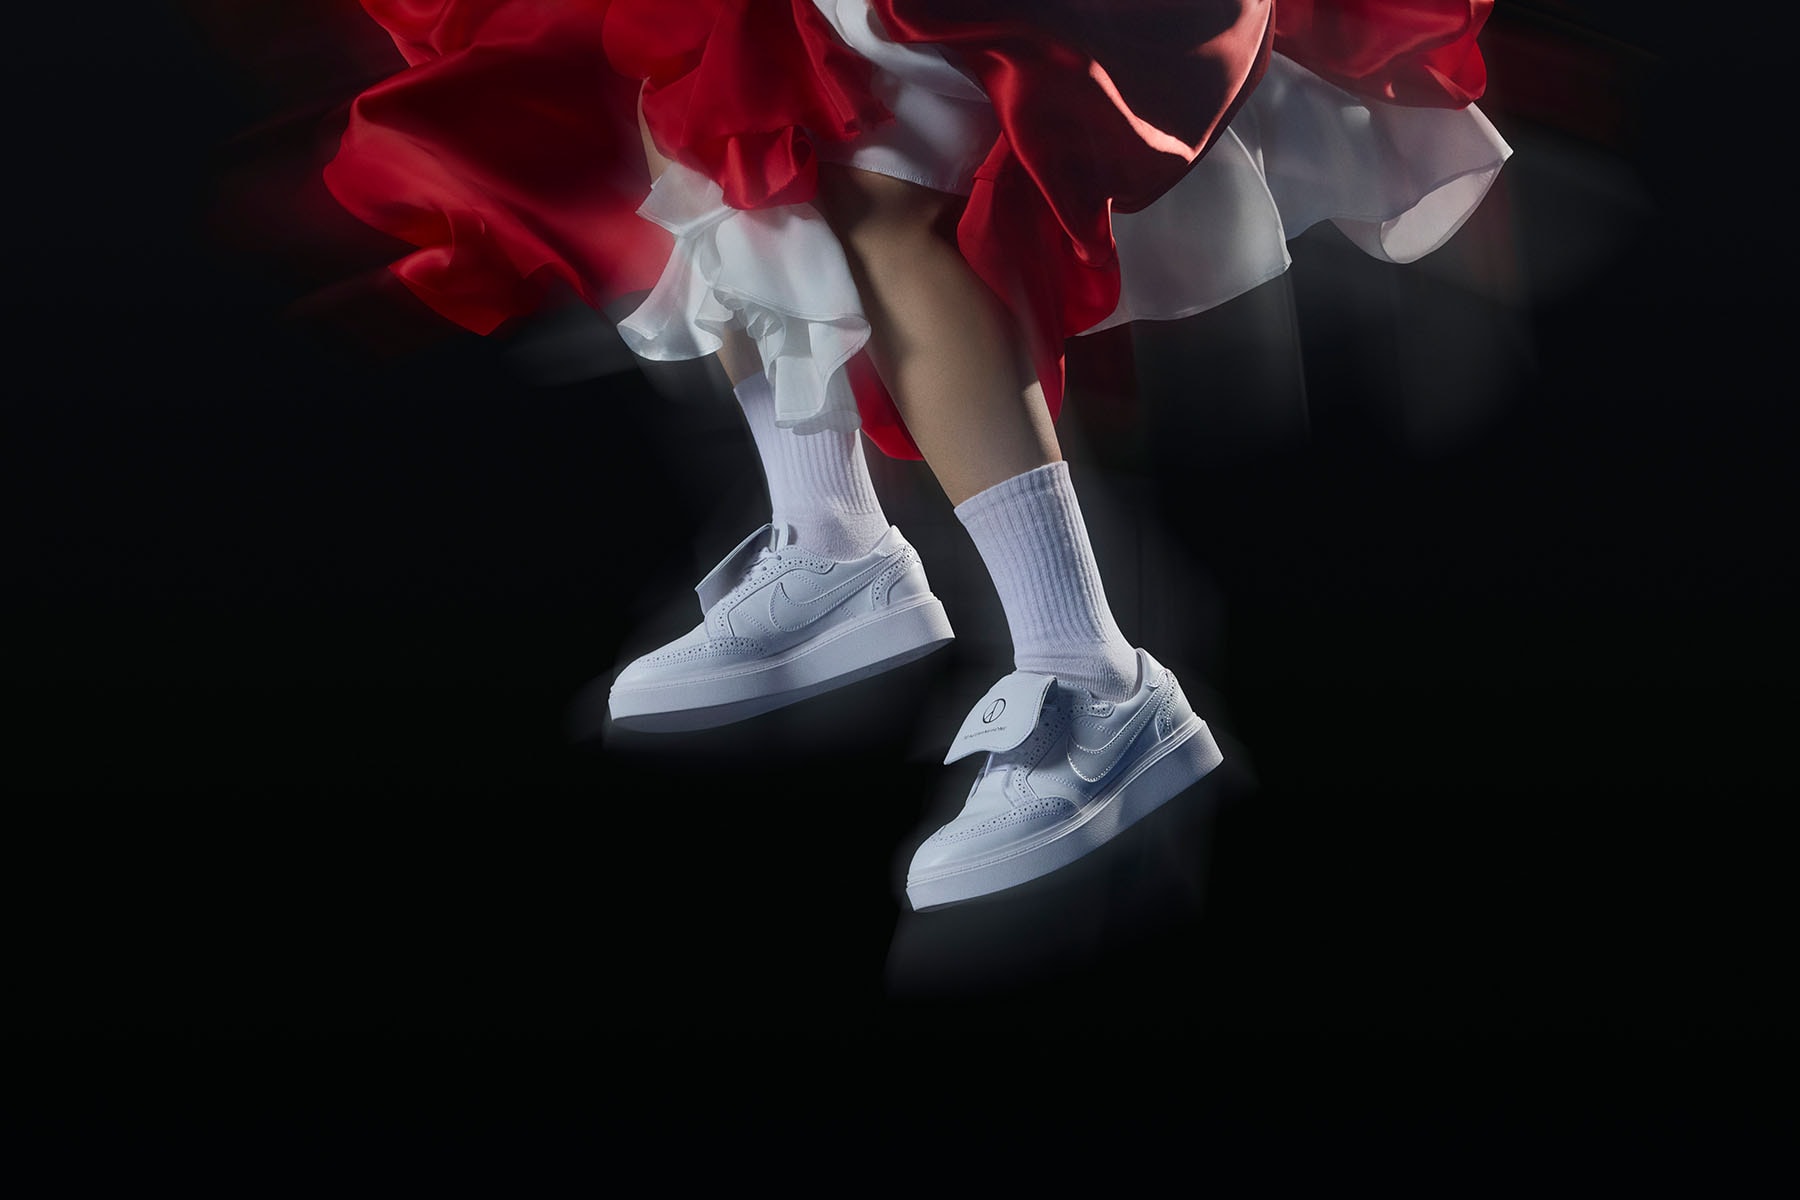 PEACEMINUSONE x Nike Kwondo1 最新聯乘鞋款官方圖輯正式發佈